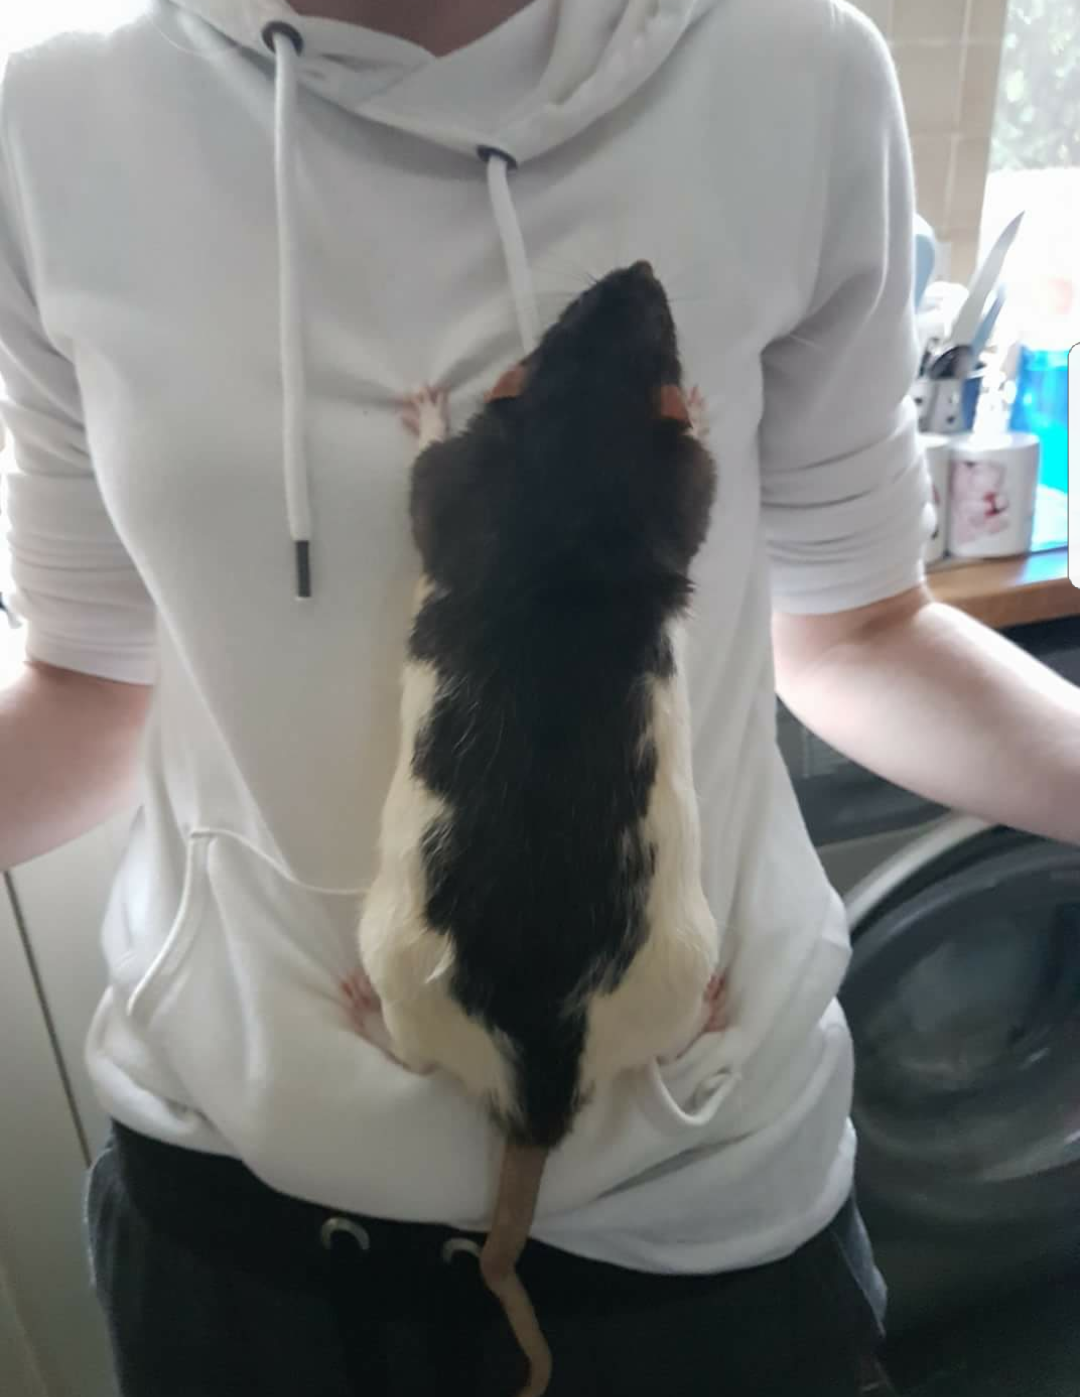 Rat climbing up a woman's shirt